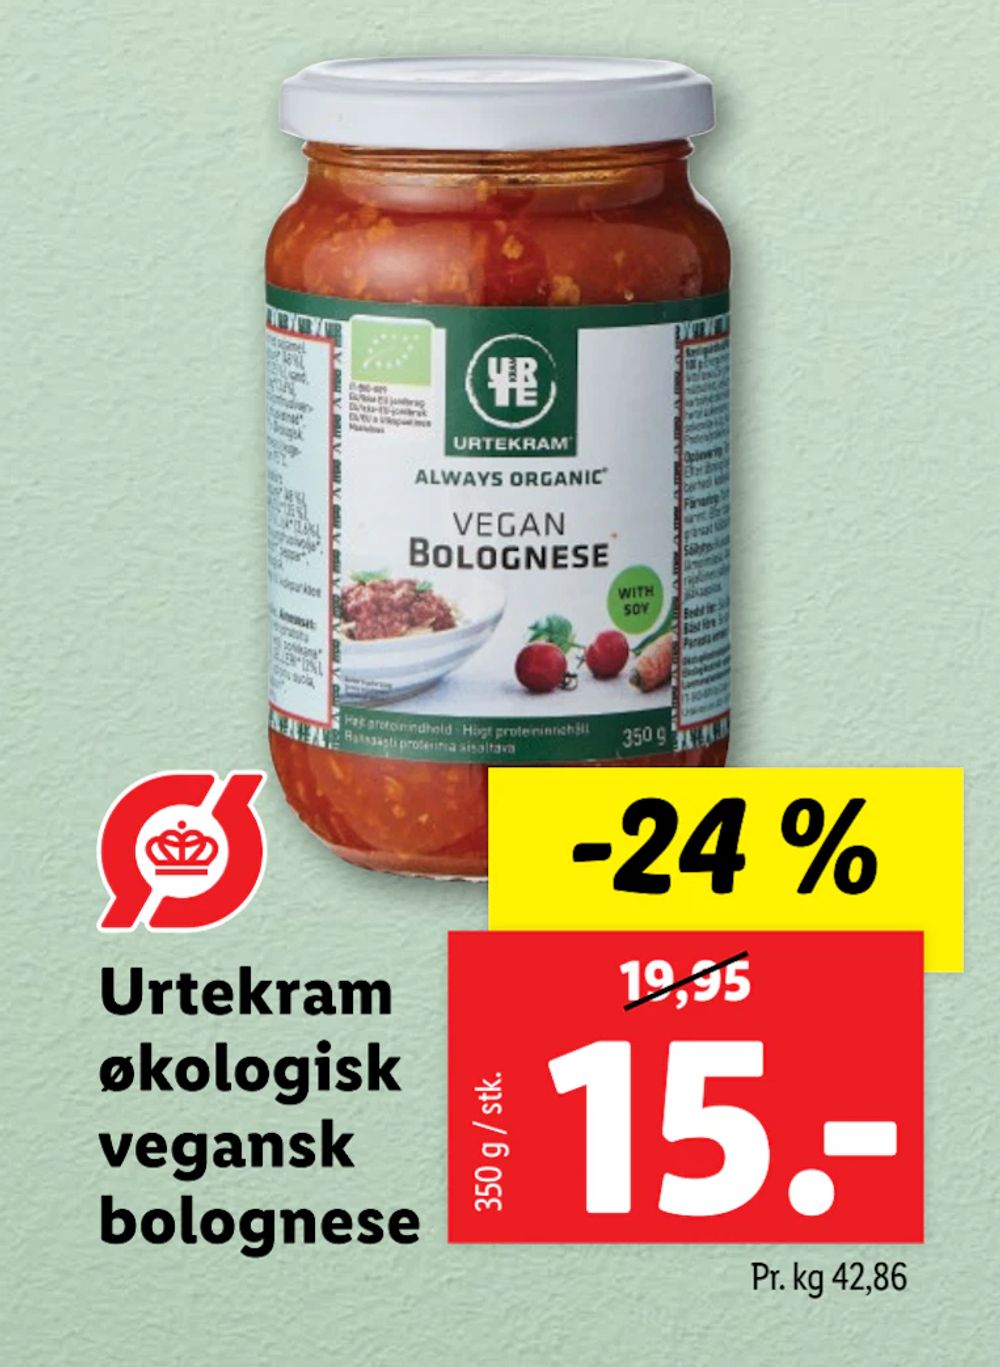 Tilbud på Urtekram økologisk vegansk bolognese fra Lidl til 15 kr.